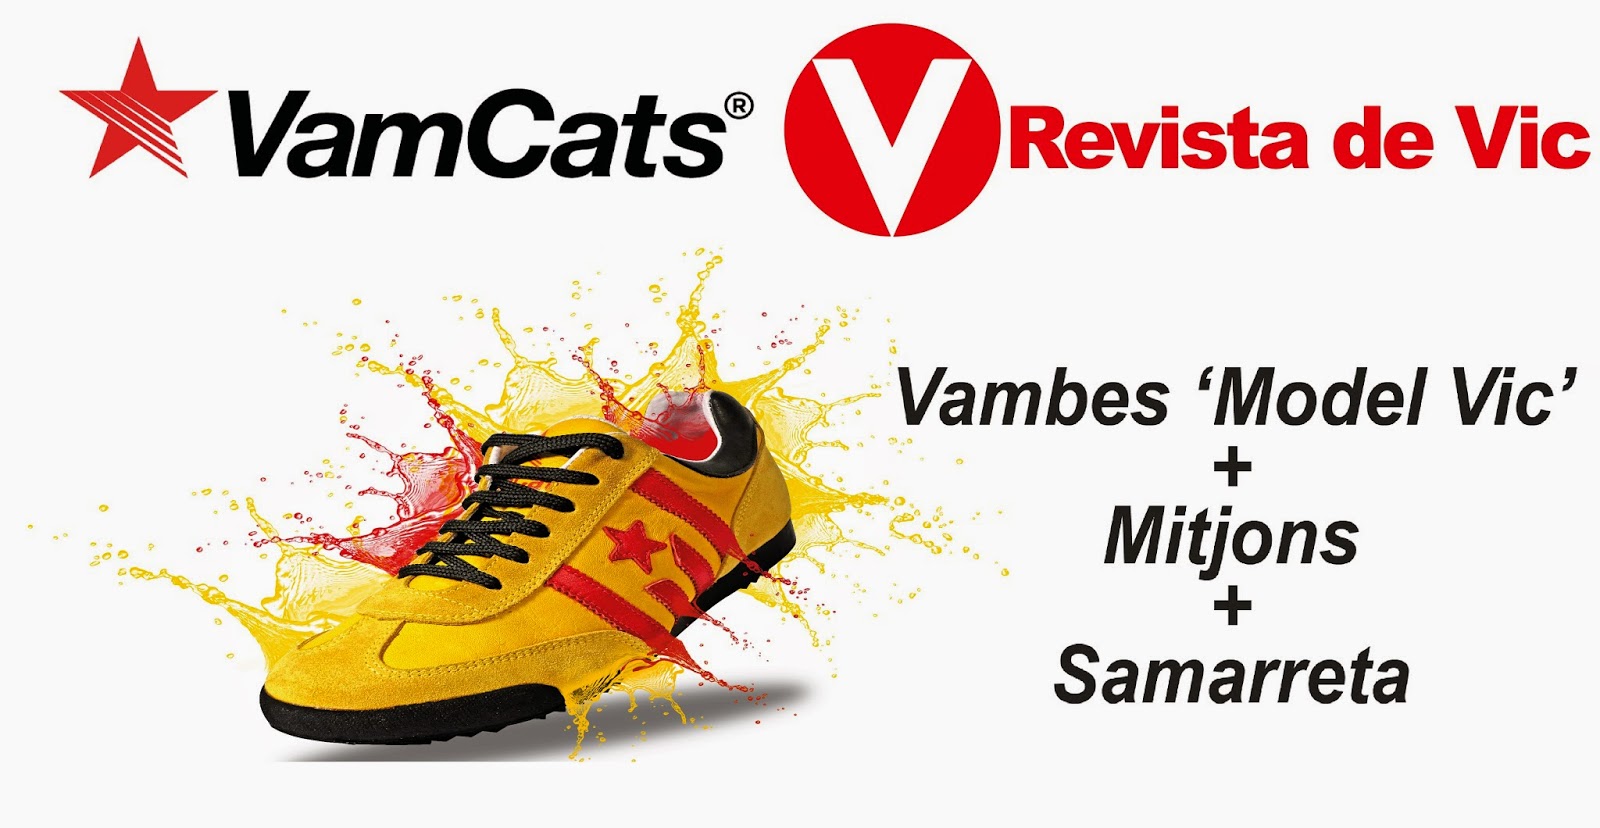 Guanya unes Vamcats 'Model Vic' + mitjons + samarreta